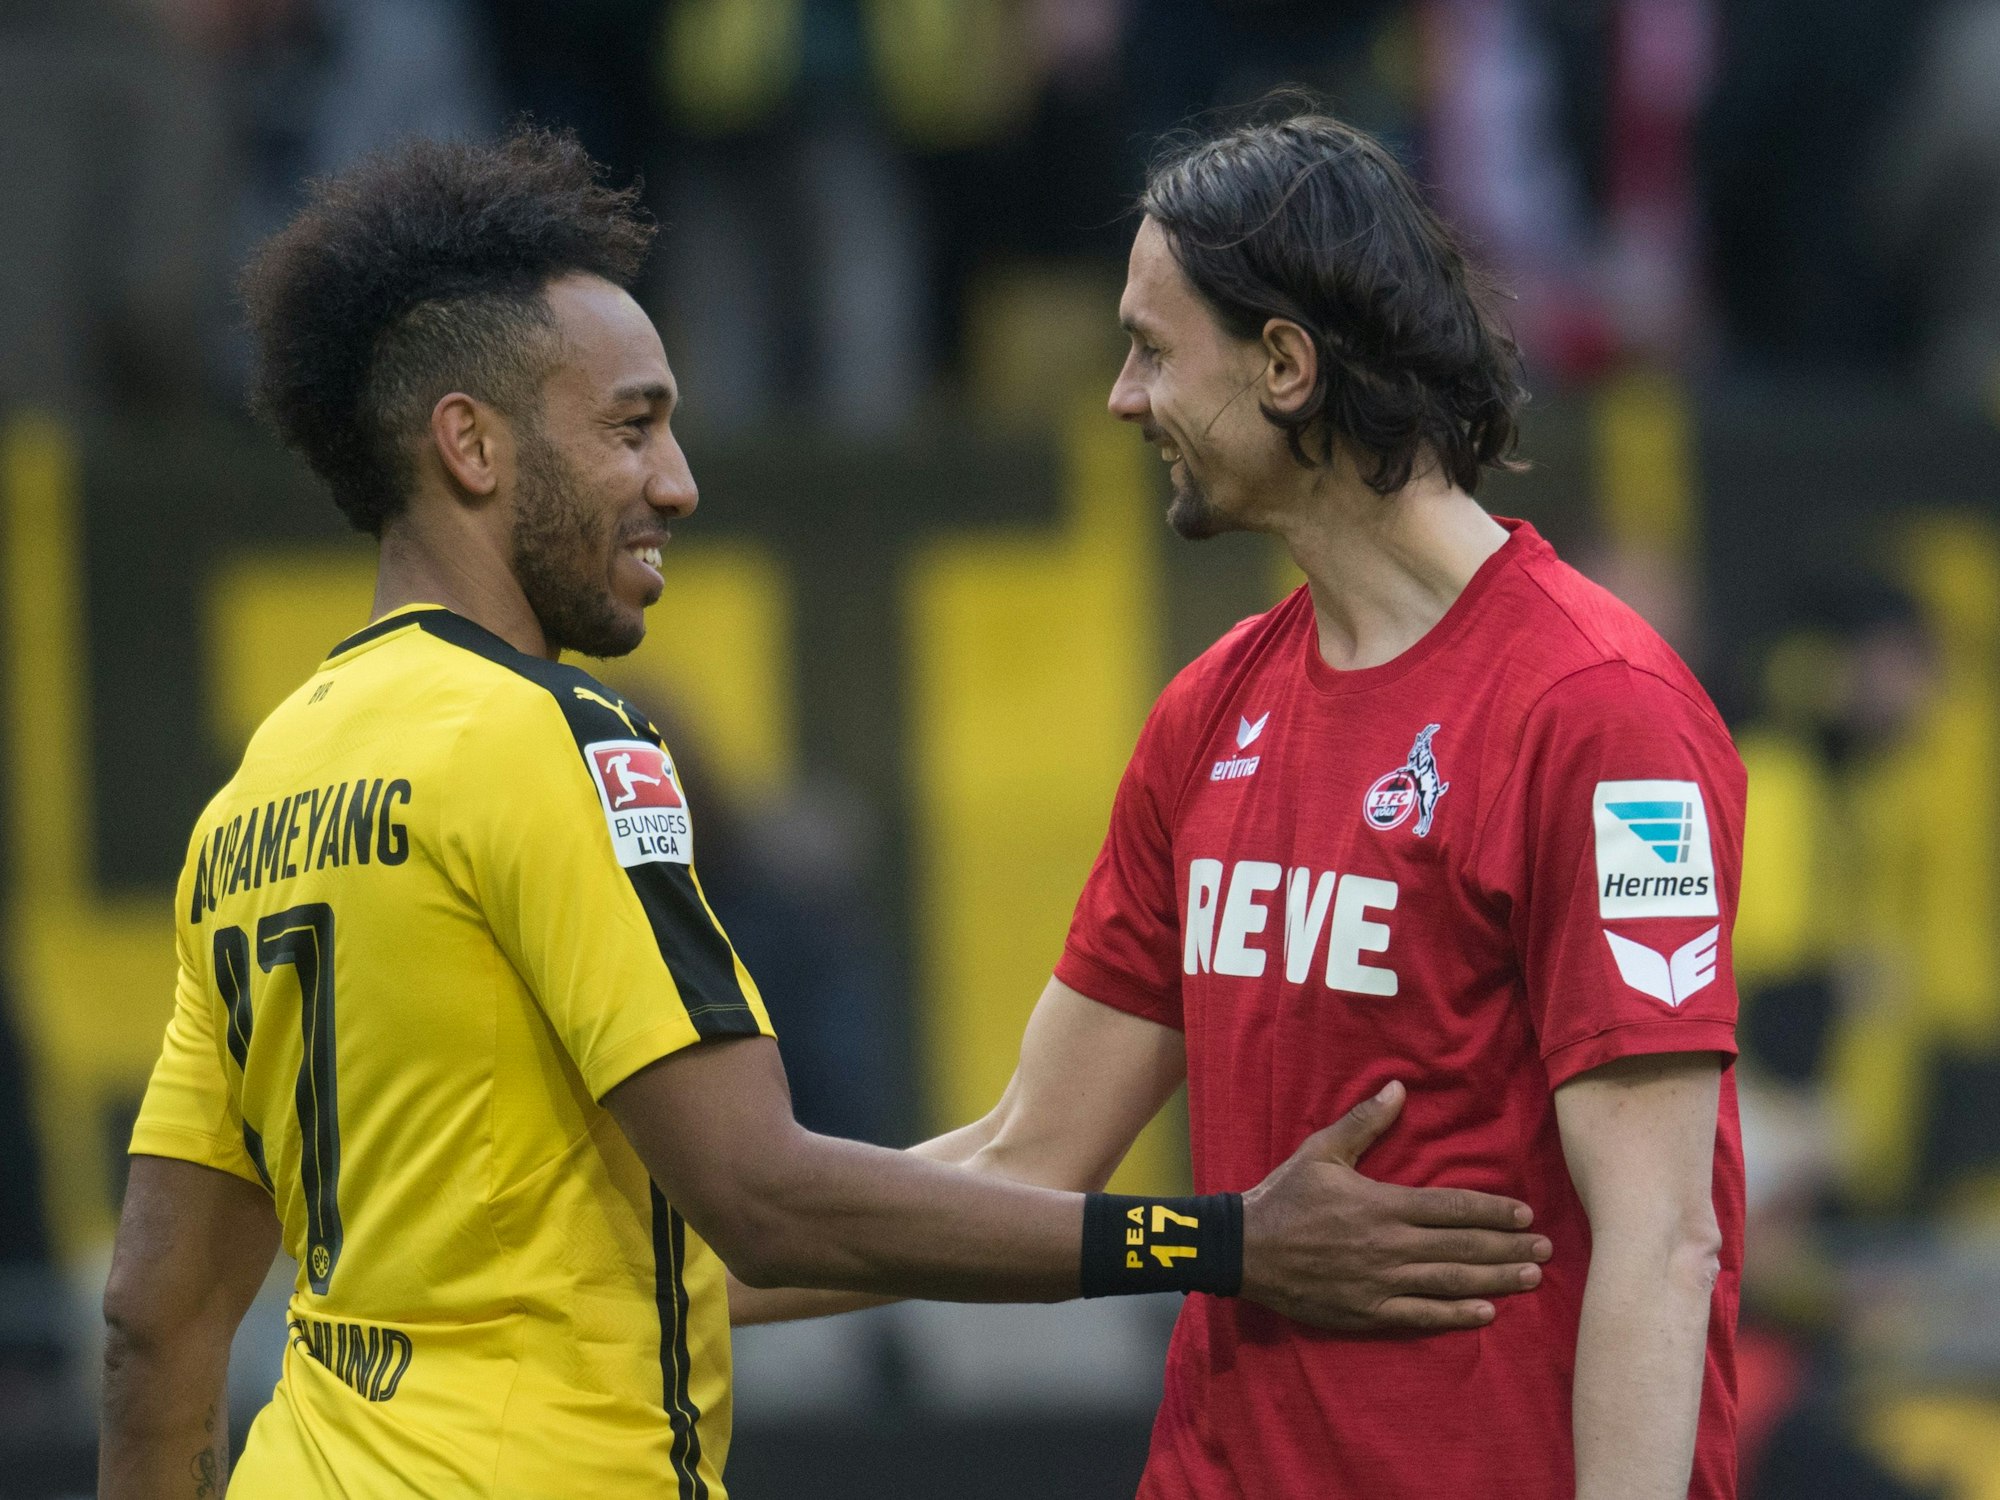 Borussia Dortmund gegen den 1. FC Köln: Es gibt nicht nur Rivalität in der Bundesliga, insbesondere unter Fans. Unser Archivbild zeigt Pierre-Emerick Aubameyang (links im BVB-Trikot) und Neven Subotic im Frühjahr 2017.